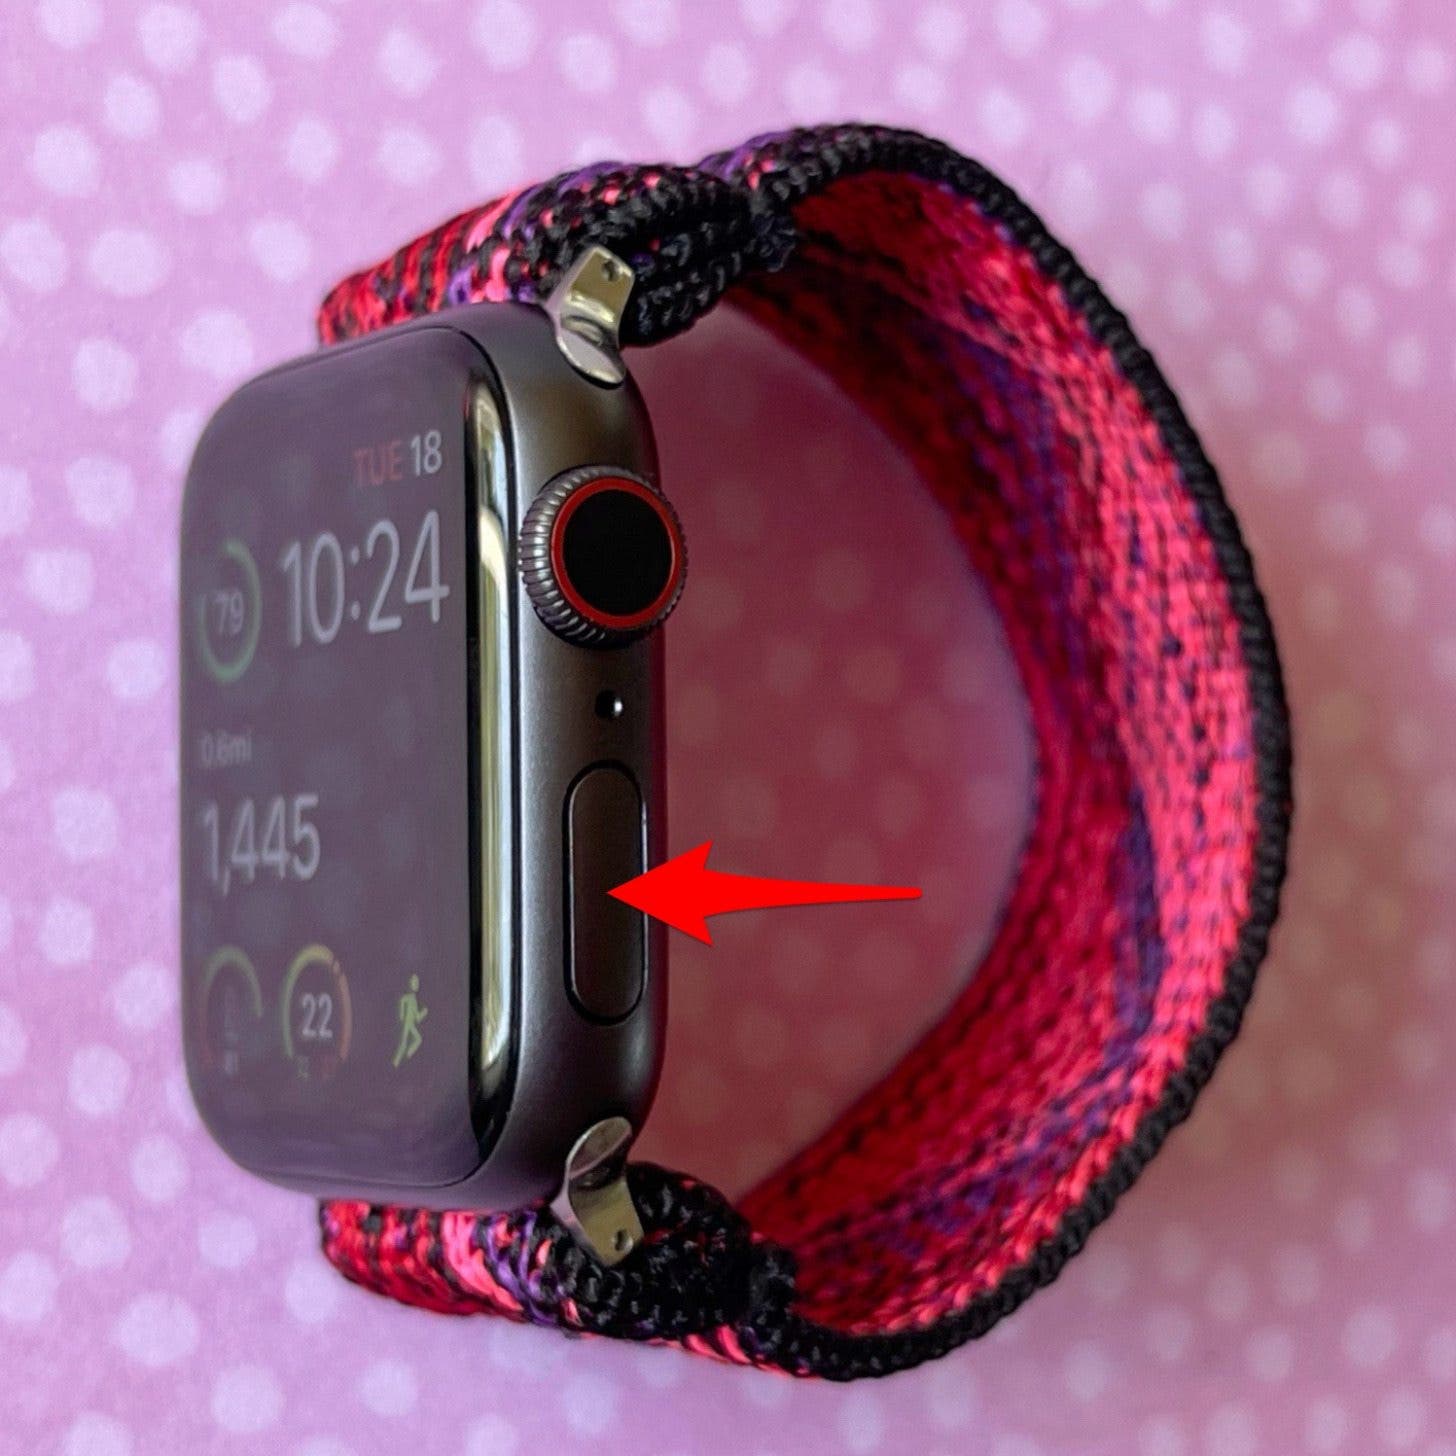 Double-cliquez sur le bouton latéral de l'Apple Watch.